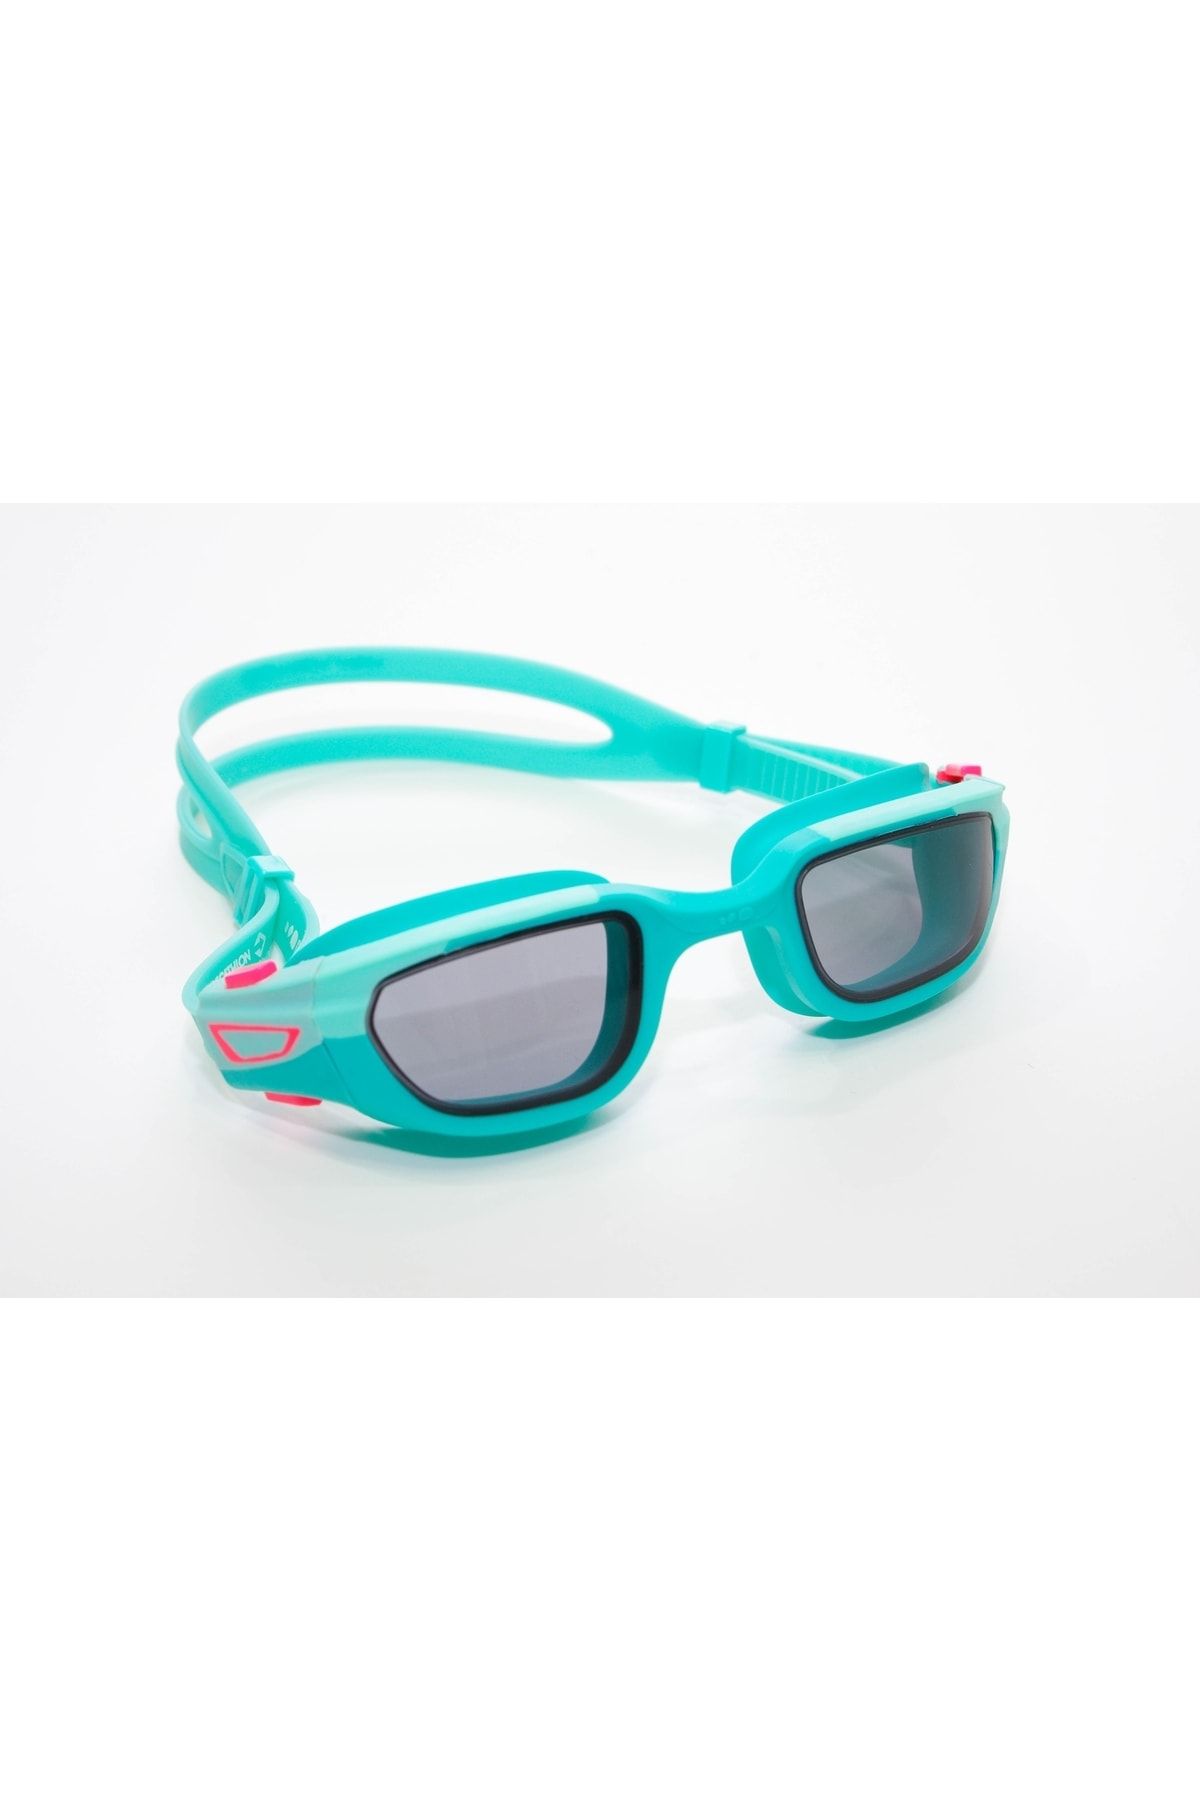 Decathlon - Çocuk Yüzücü Gözlüğü Yeşil Pembe